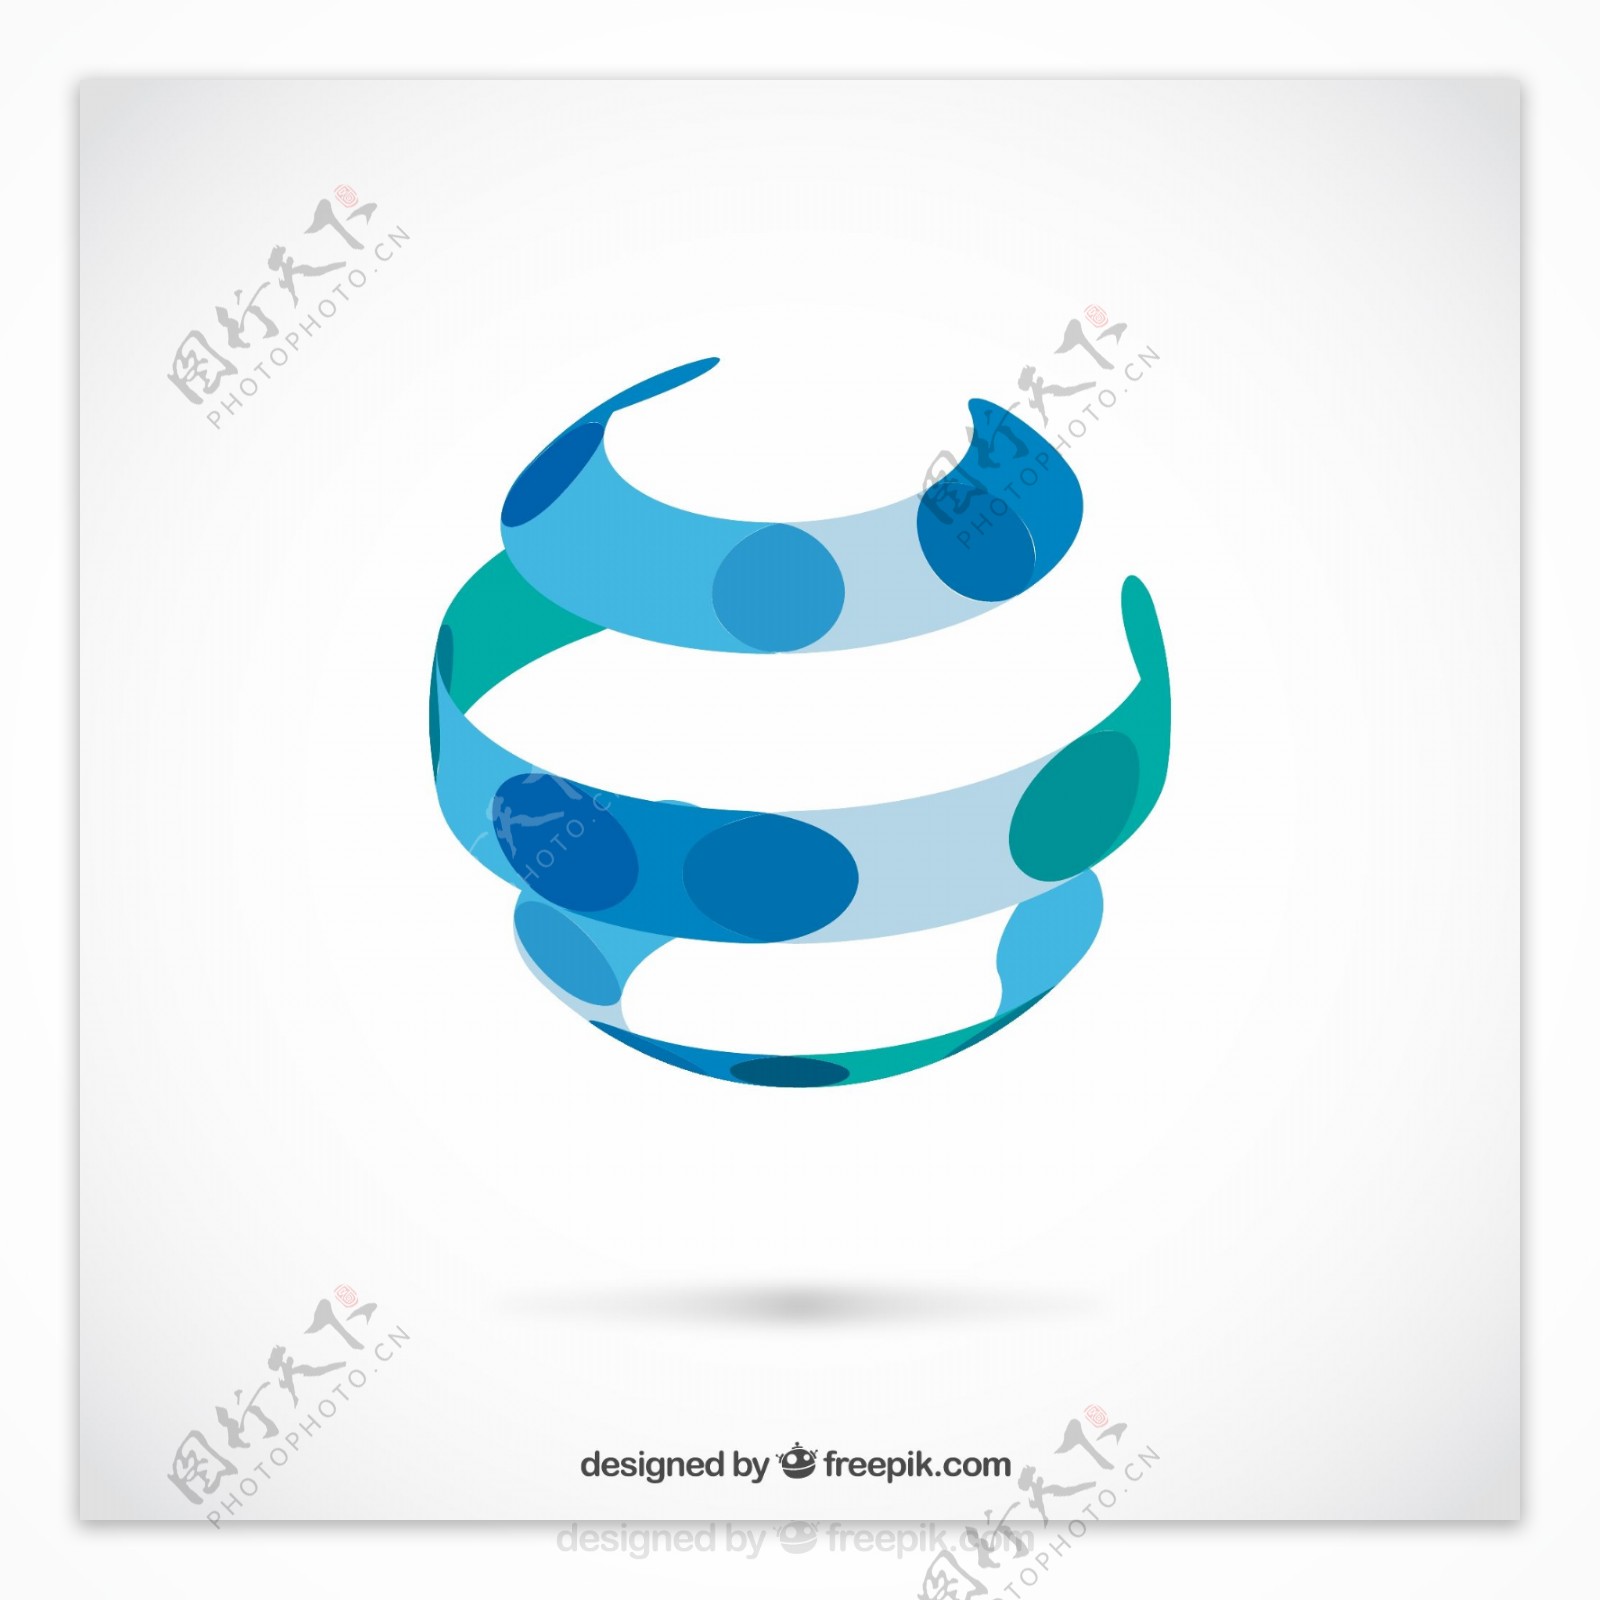 环形球体标志